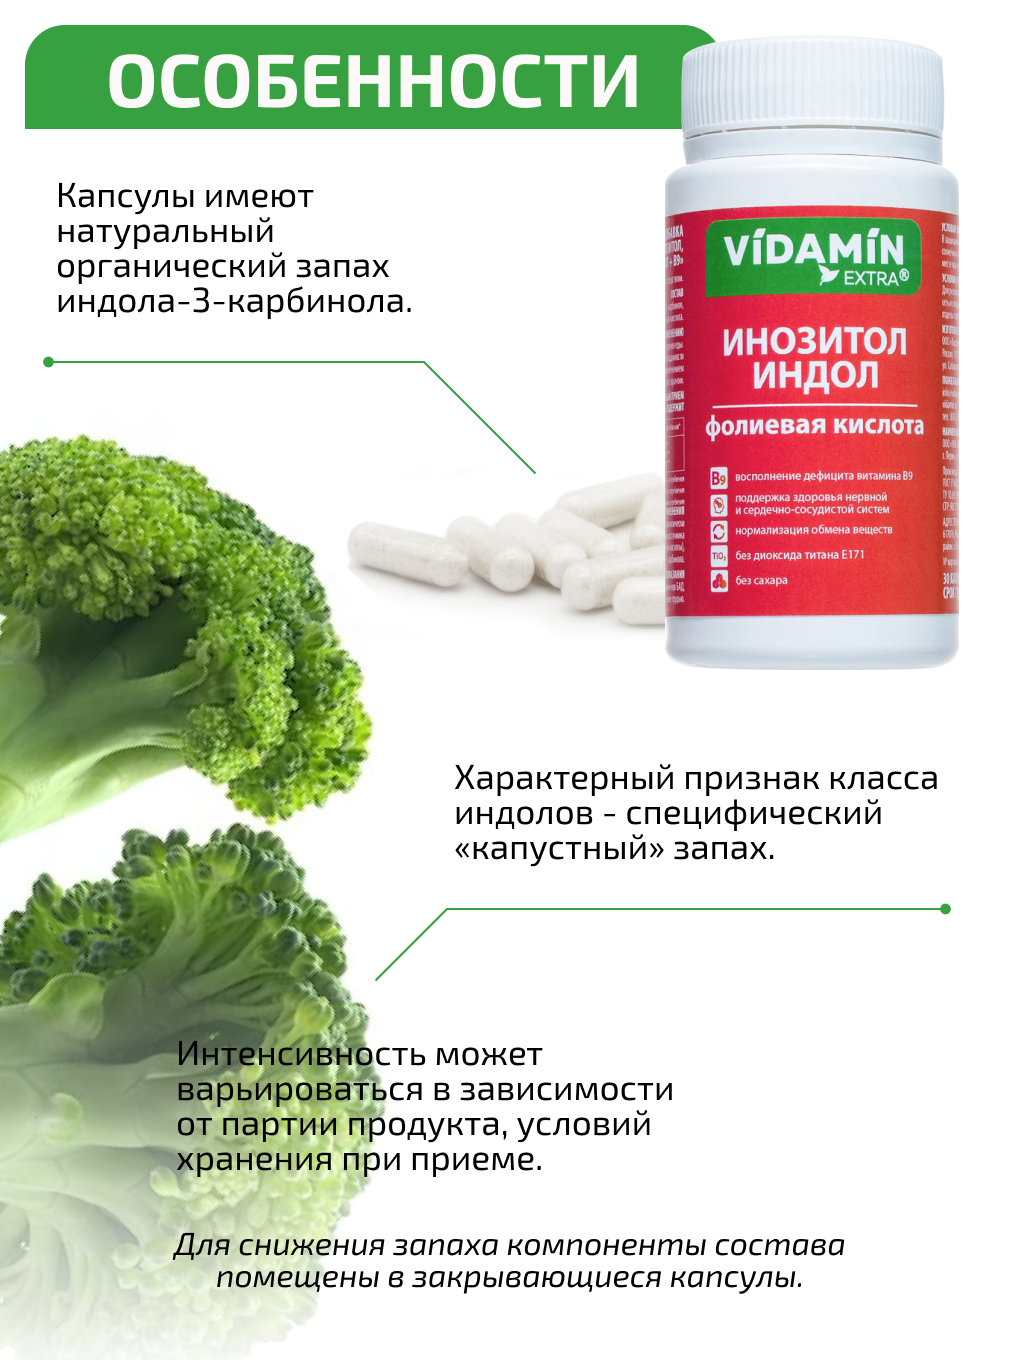 Инозитол индол витамин В9 VIDAMIN EXTRA для женского здоровья - фото 8